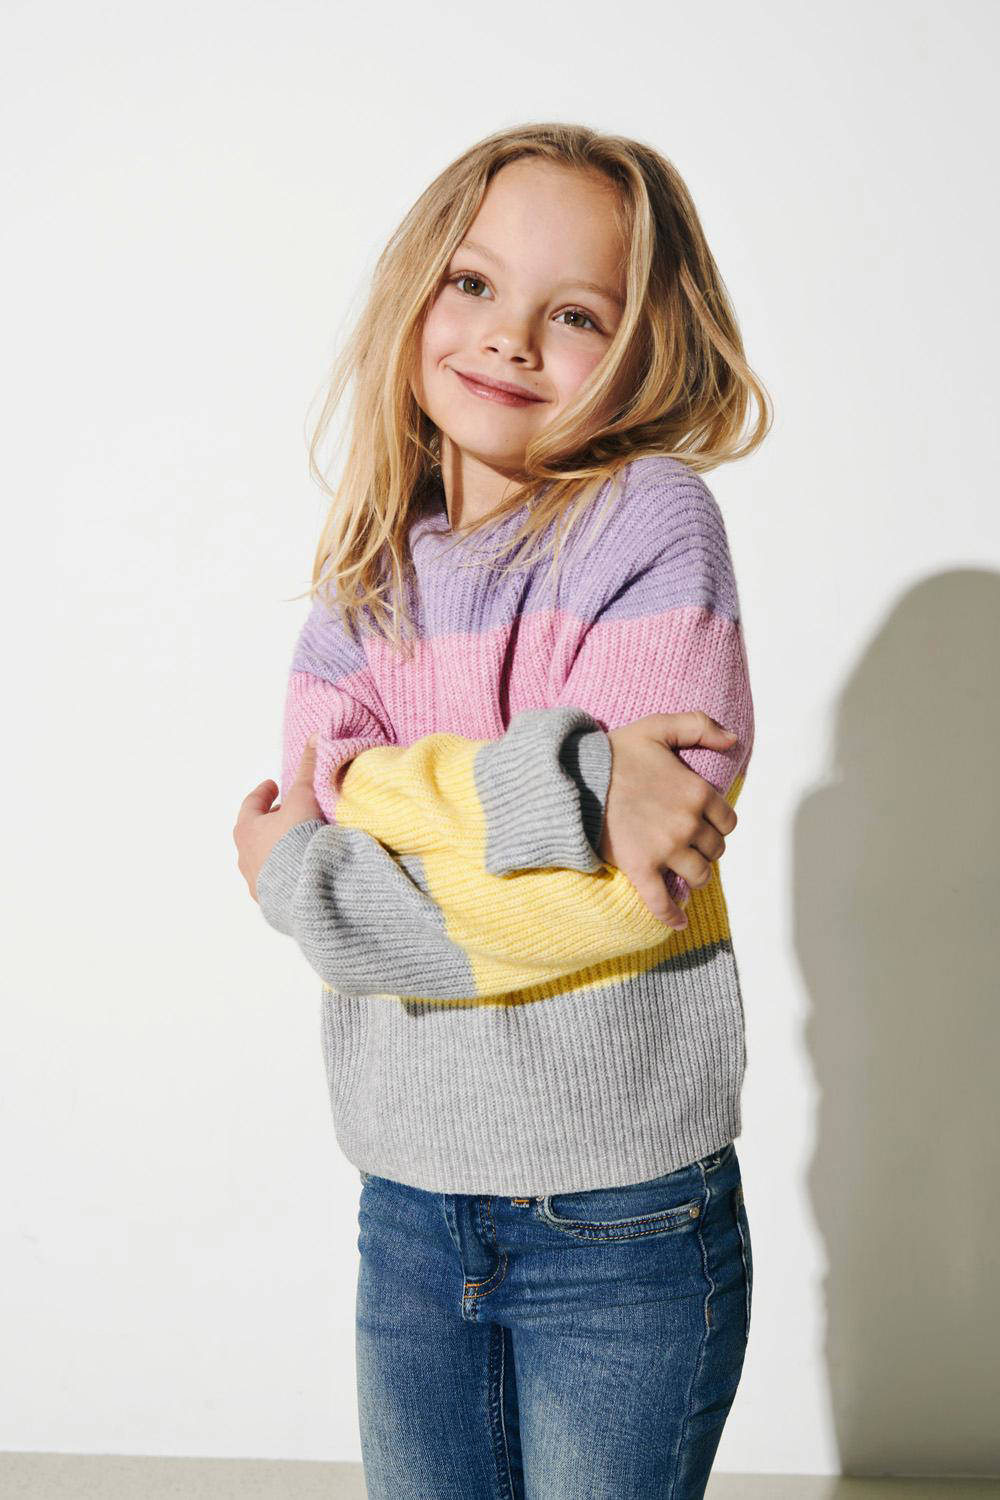 Kleding Unisex kinderkleding Unisex babykleding Sweaters trui voor baby en kinderen handgemaakte trui voor meisjes wol pullover voor baby meisje Hand gebreide meisje kinderen trui 